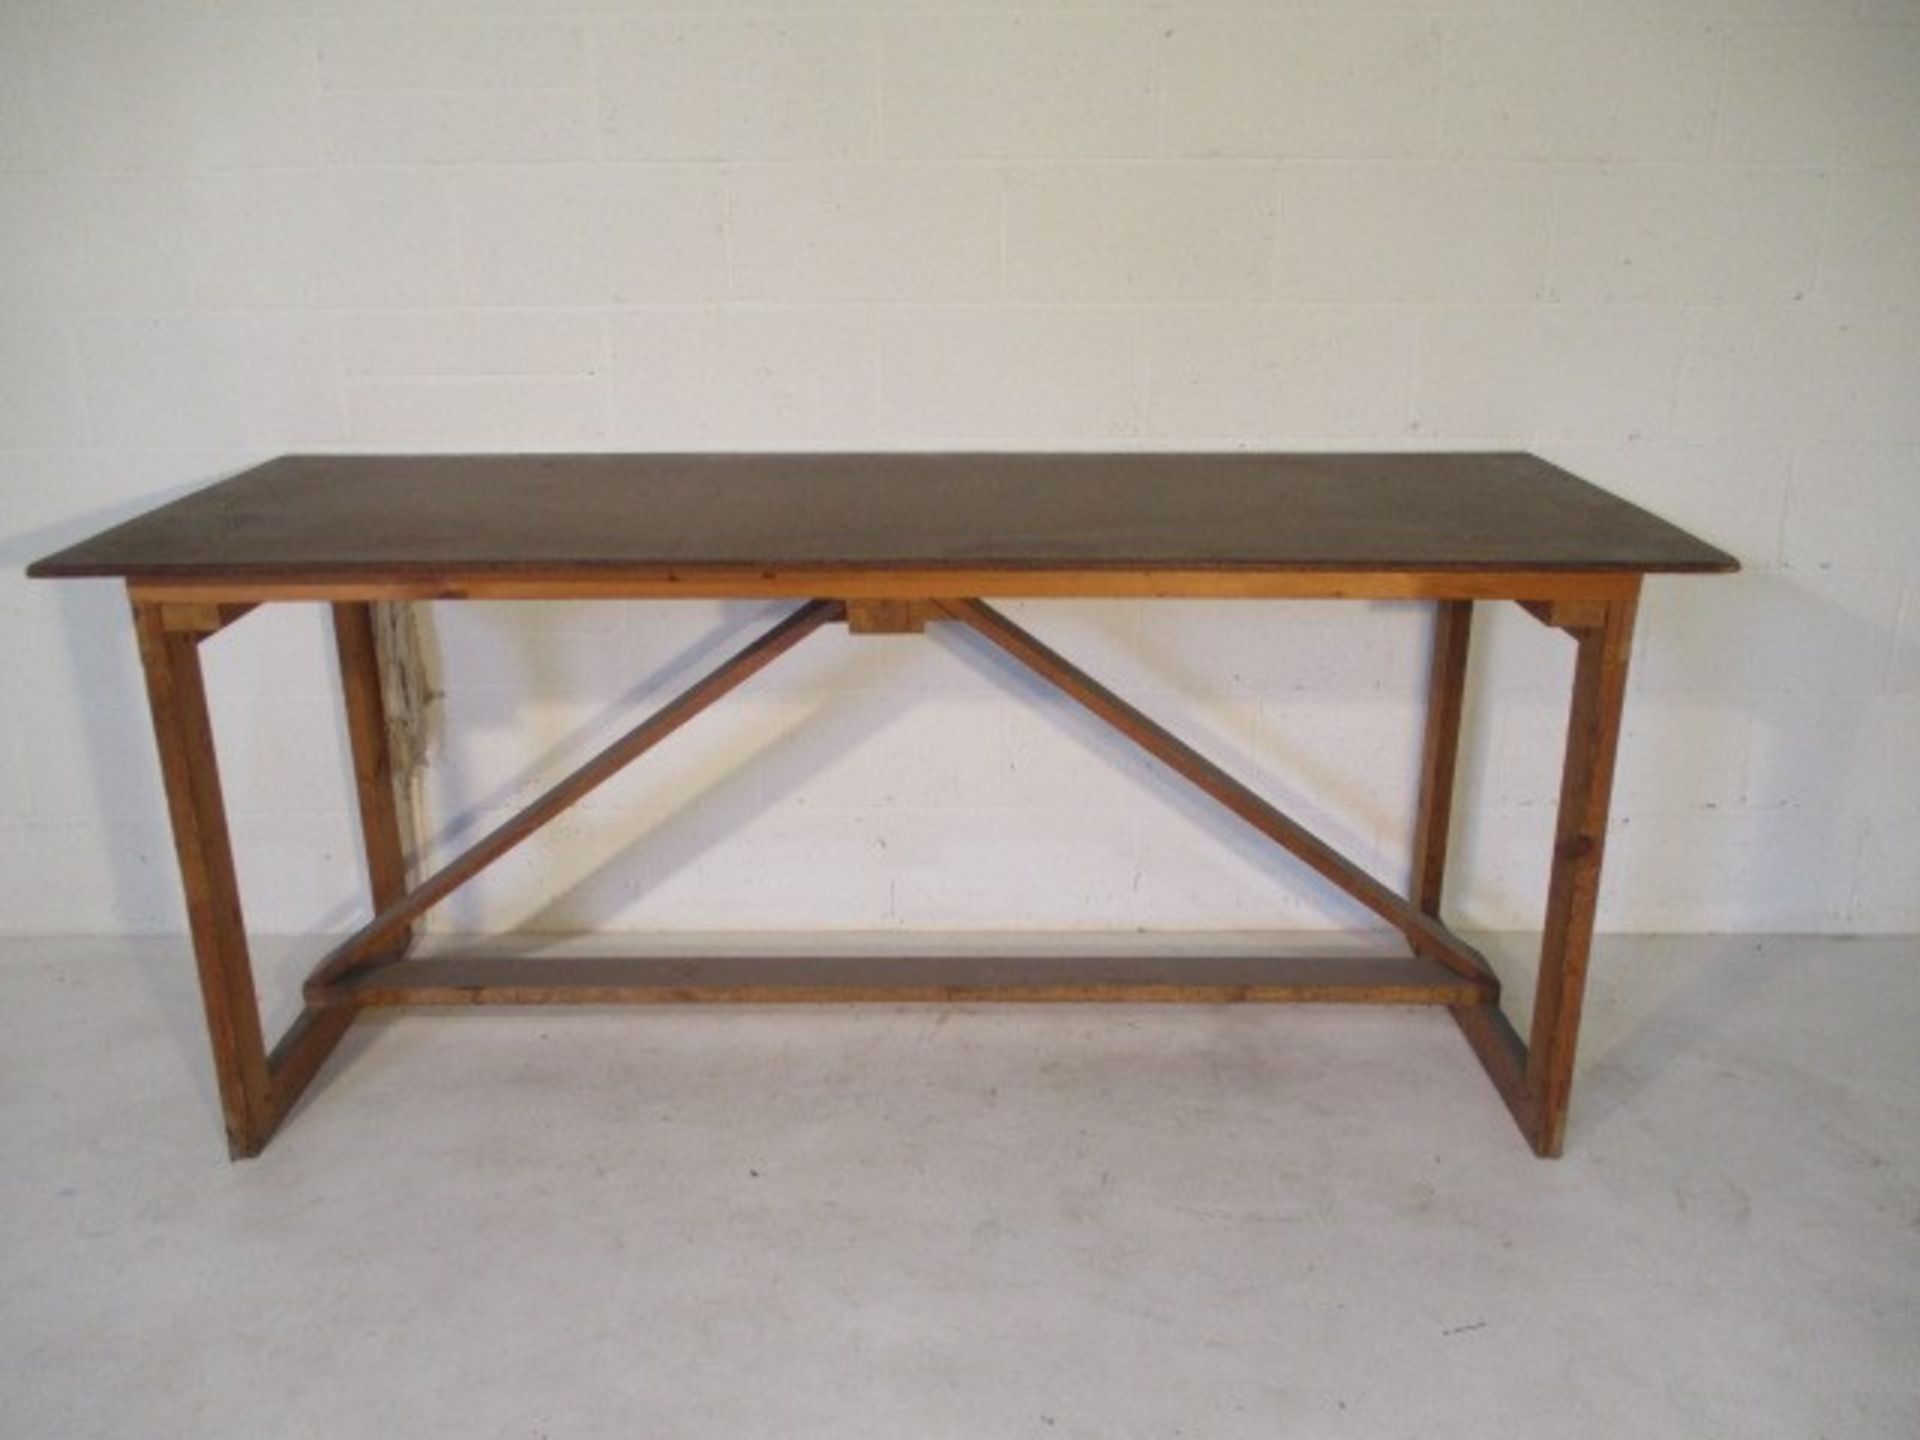 A handmade trestle style table, 205 cm x 72 cm x 90 cm